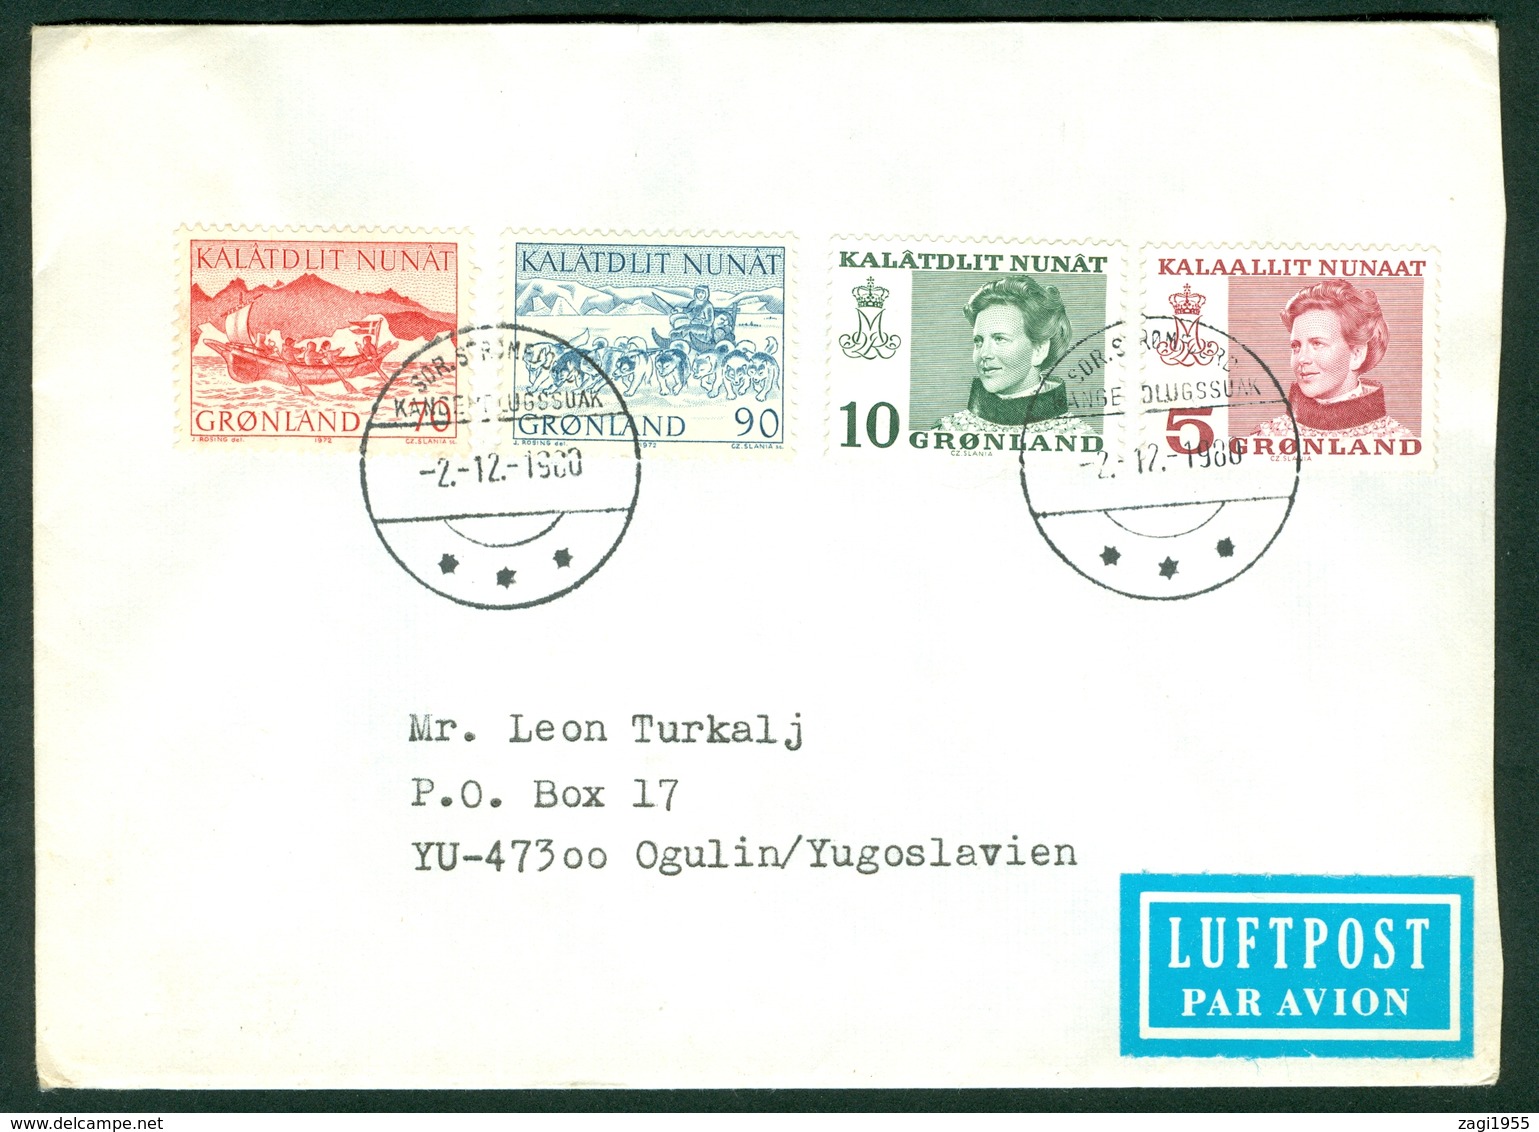 Greenland 1988 Cover Denmark Letter - Storia Postale